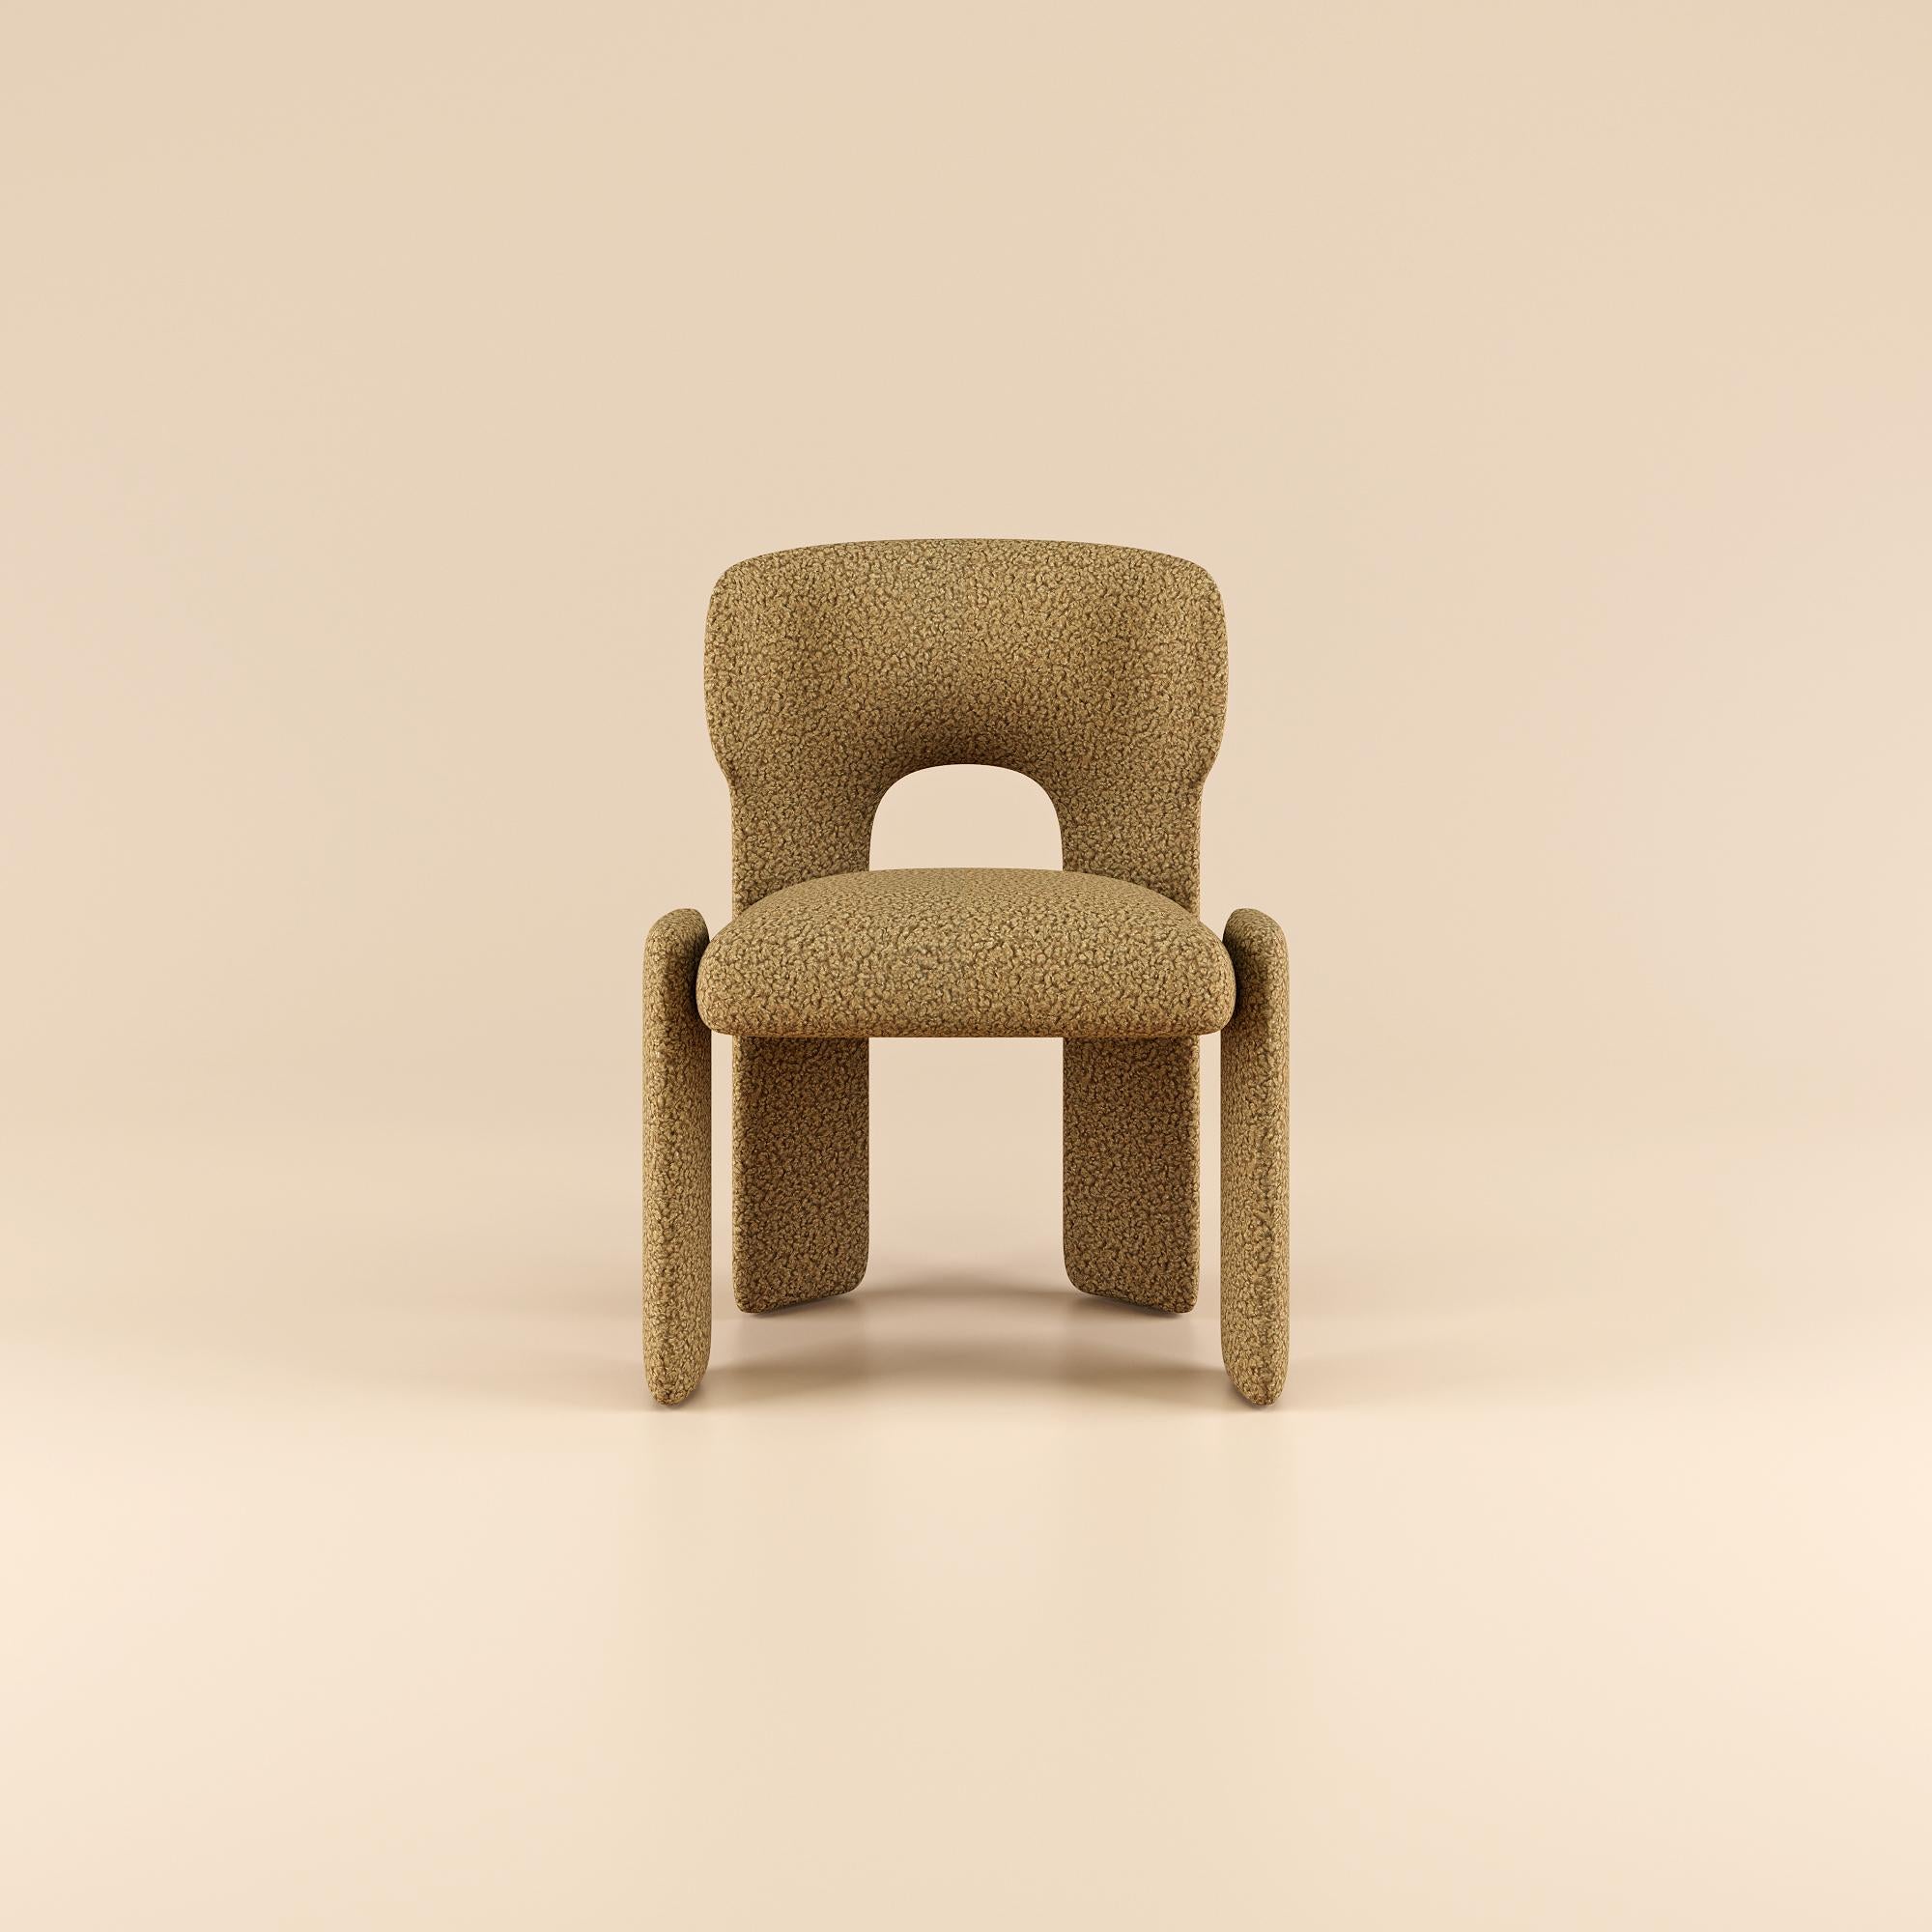 Témoignage d'un nouveau niveau de design moderne, la chaise de salle à manger Bold allie harmonieusement forme et fonction, rehaussant toute expérience culinaire par son élégance raffinée.

Des décennies d'expertise en matière de conception